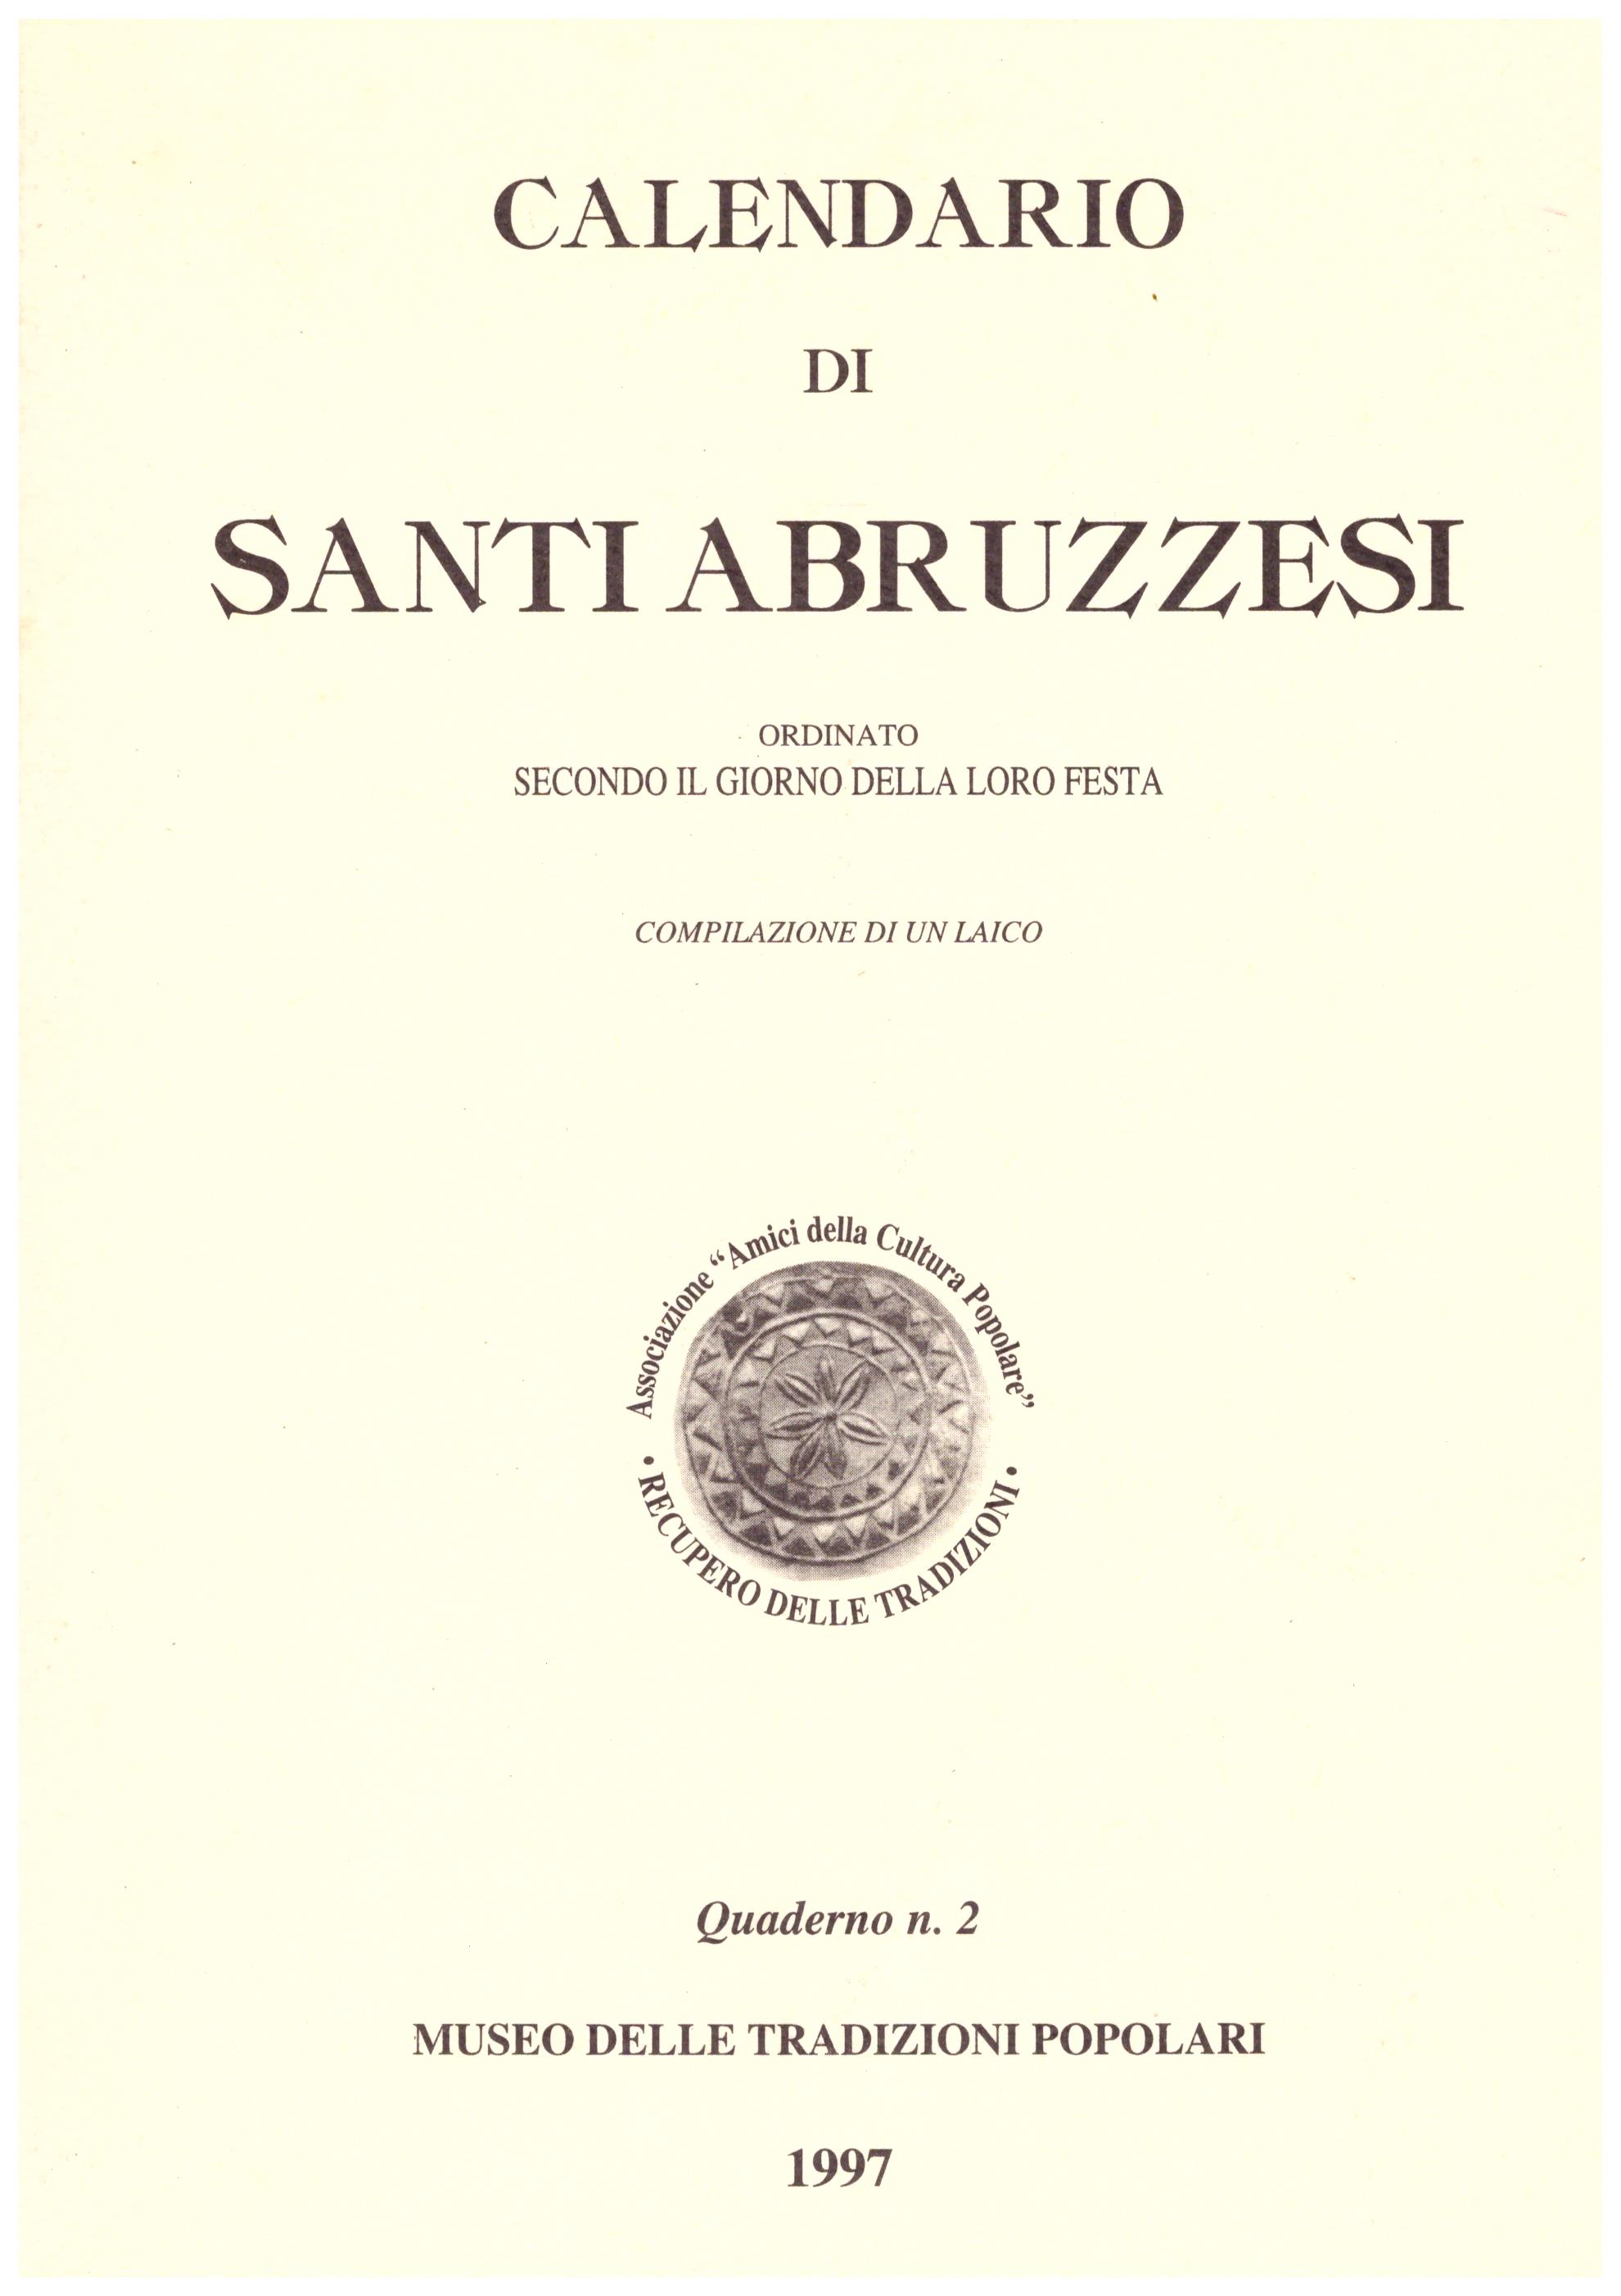 Titolo: Calendario di Santi abruzzesi Autore: AA.VV.  Editore: tipografia Interamnia, 1996